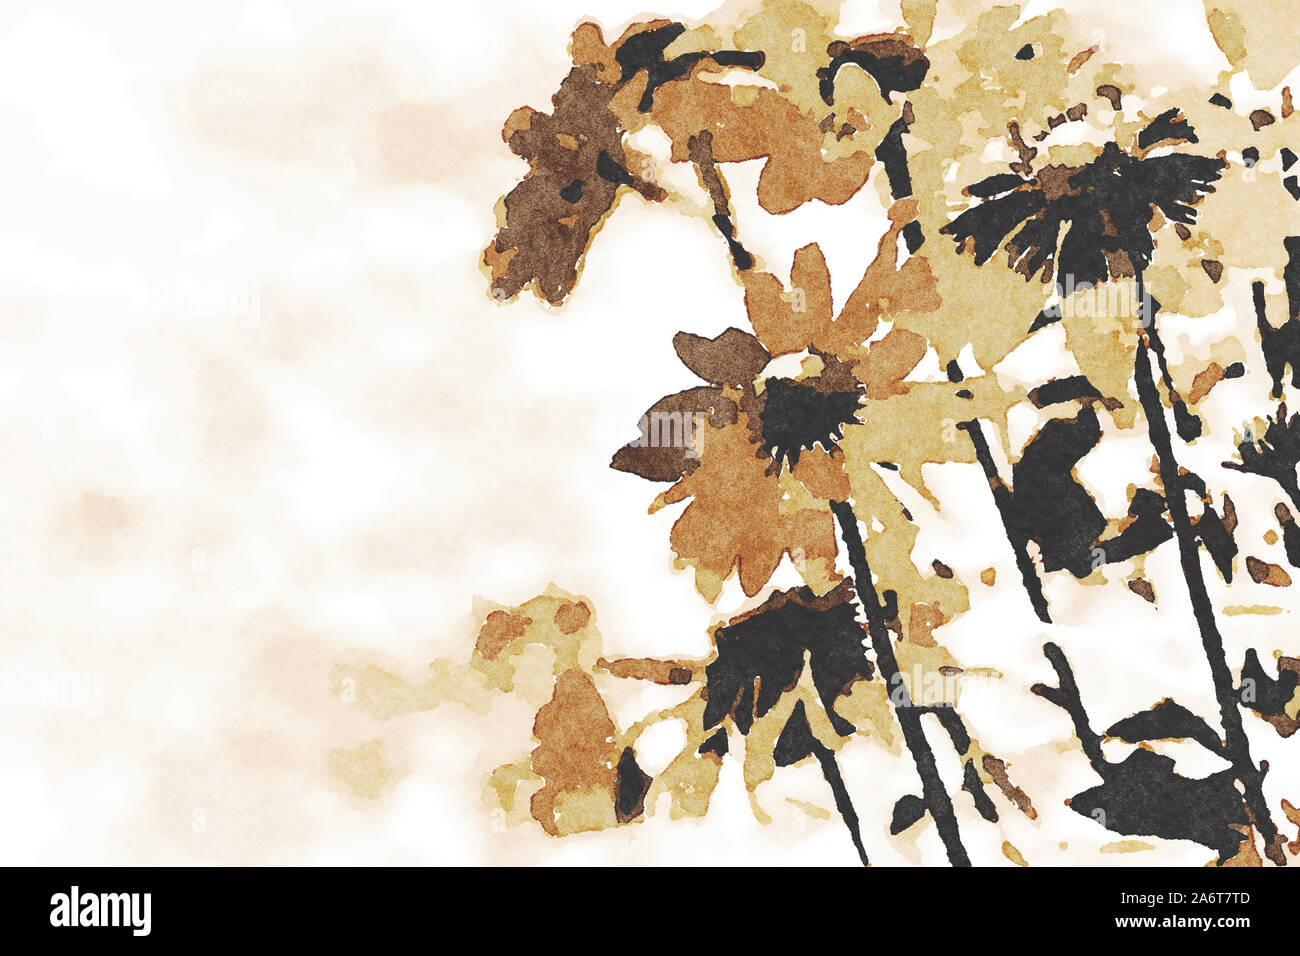 Digital art peinture toile - tons marron rudbeckia fleurs fleurissent dans le jardin (aquarelle). Banque D'Images